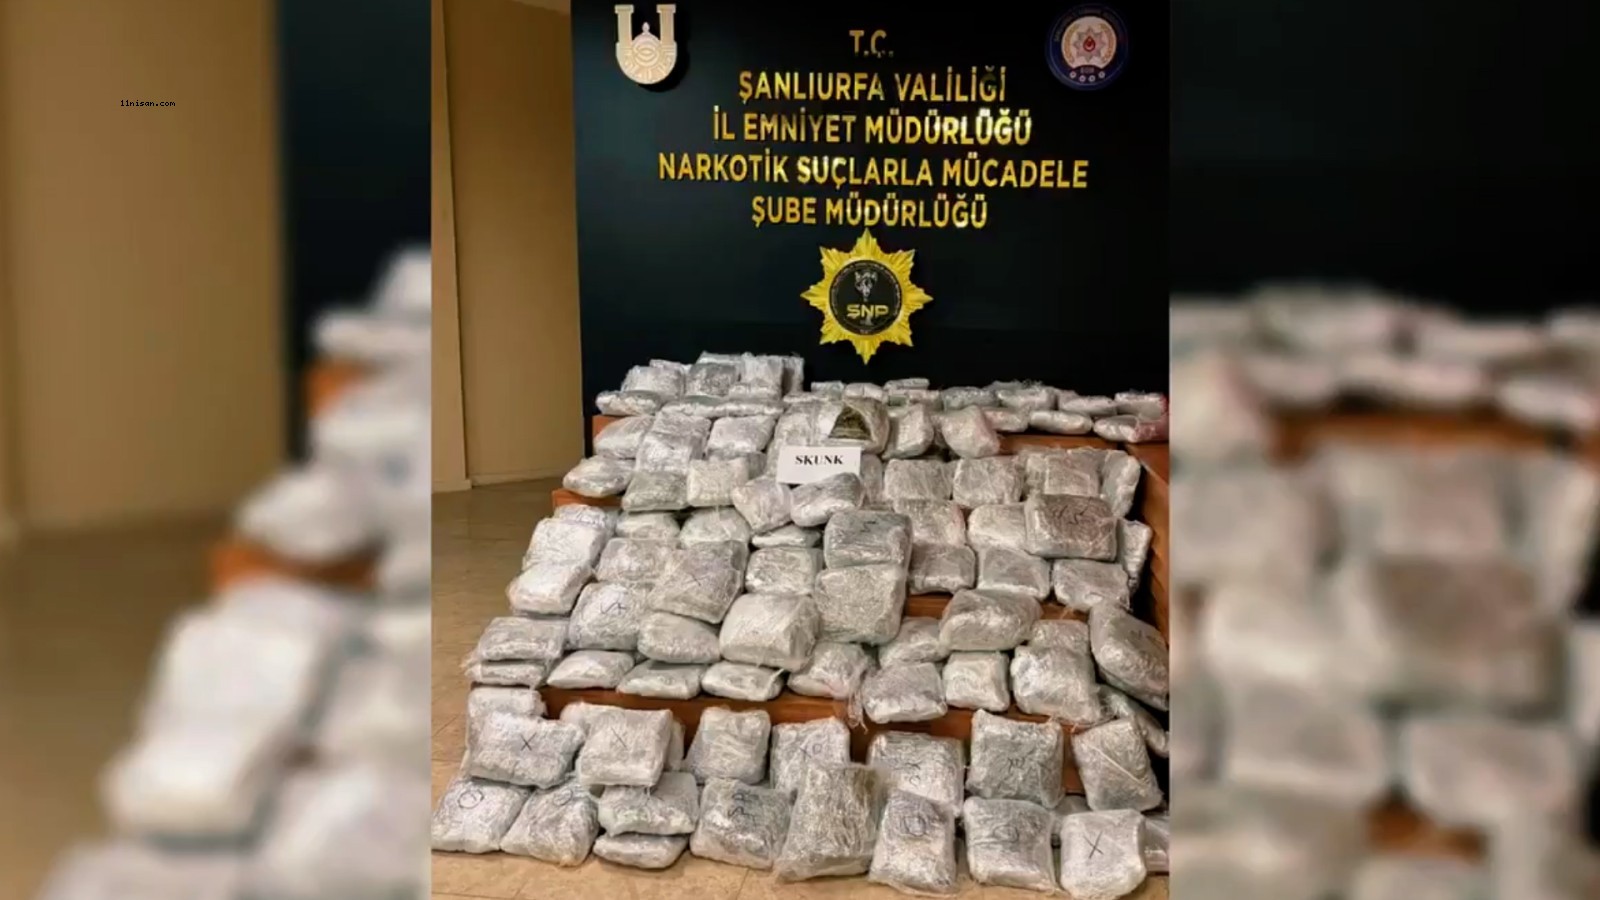 Şanlıurfa’da uyuşturucu operasyonu: 85 kilo 750 gram ele geçirildi